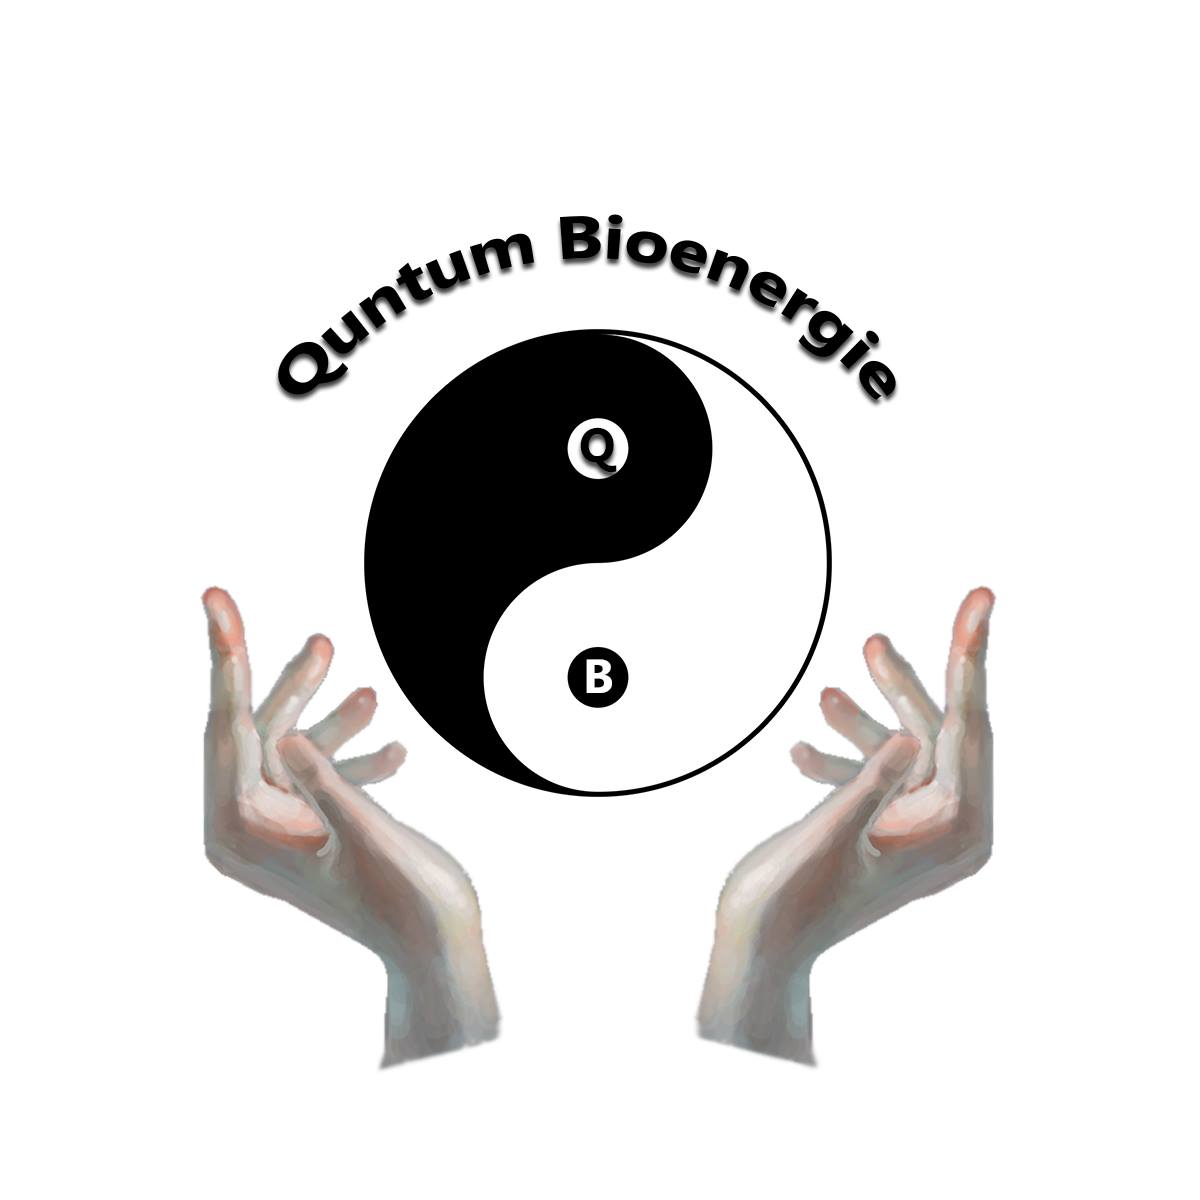 Quantum bioenergie 